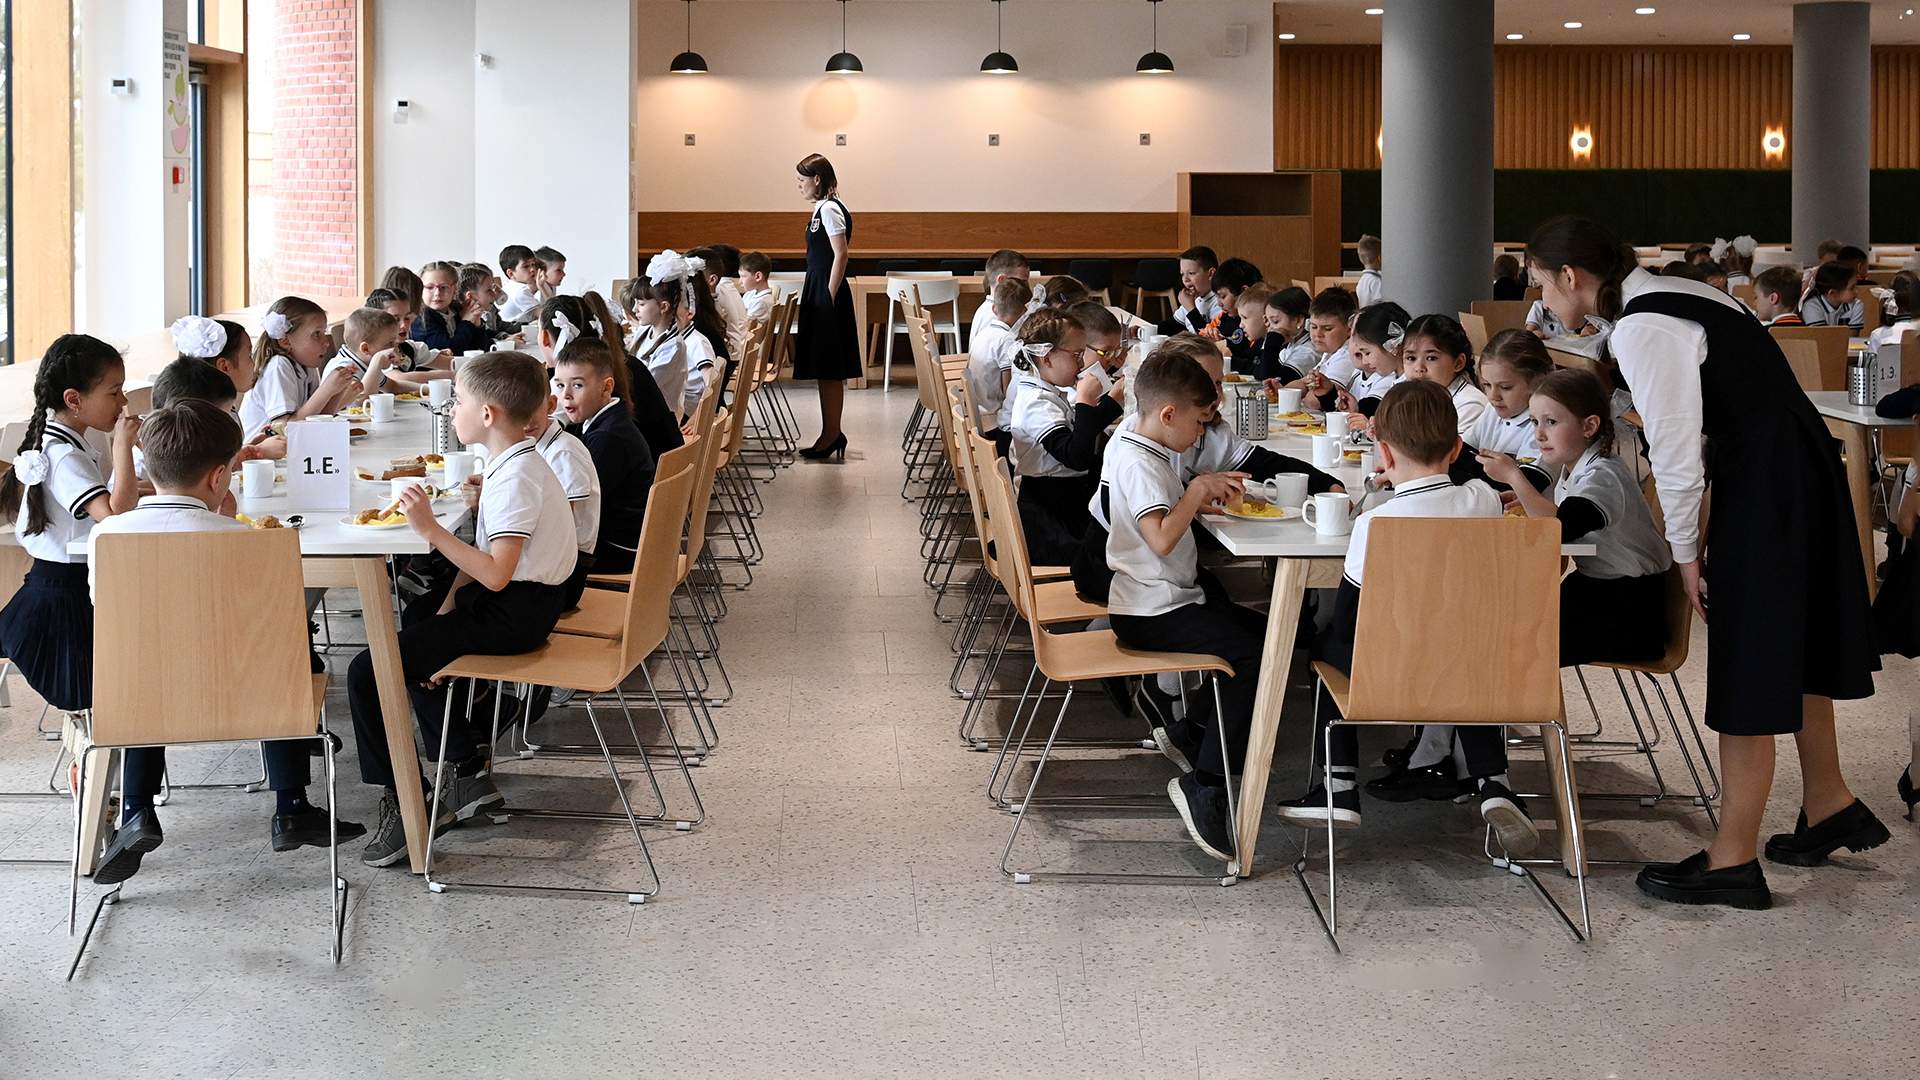 Бремя обеда: защитит ли централизация питания школьников от отравлений